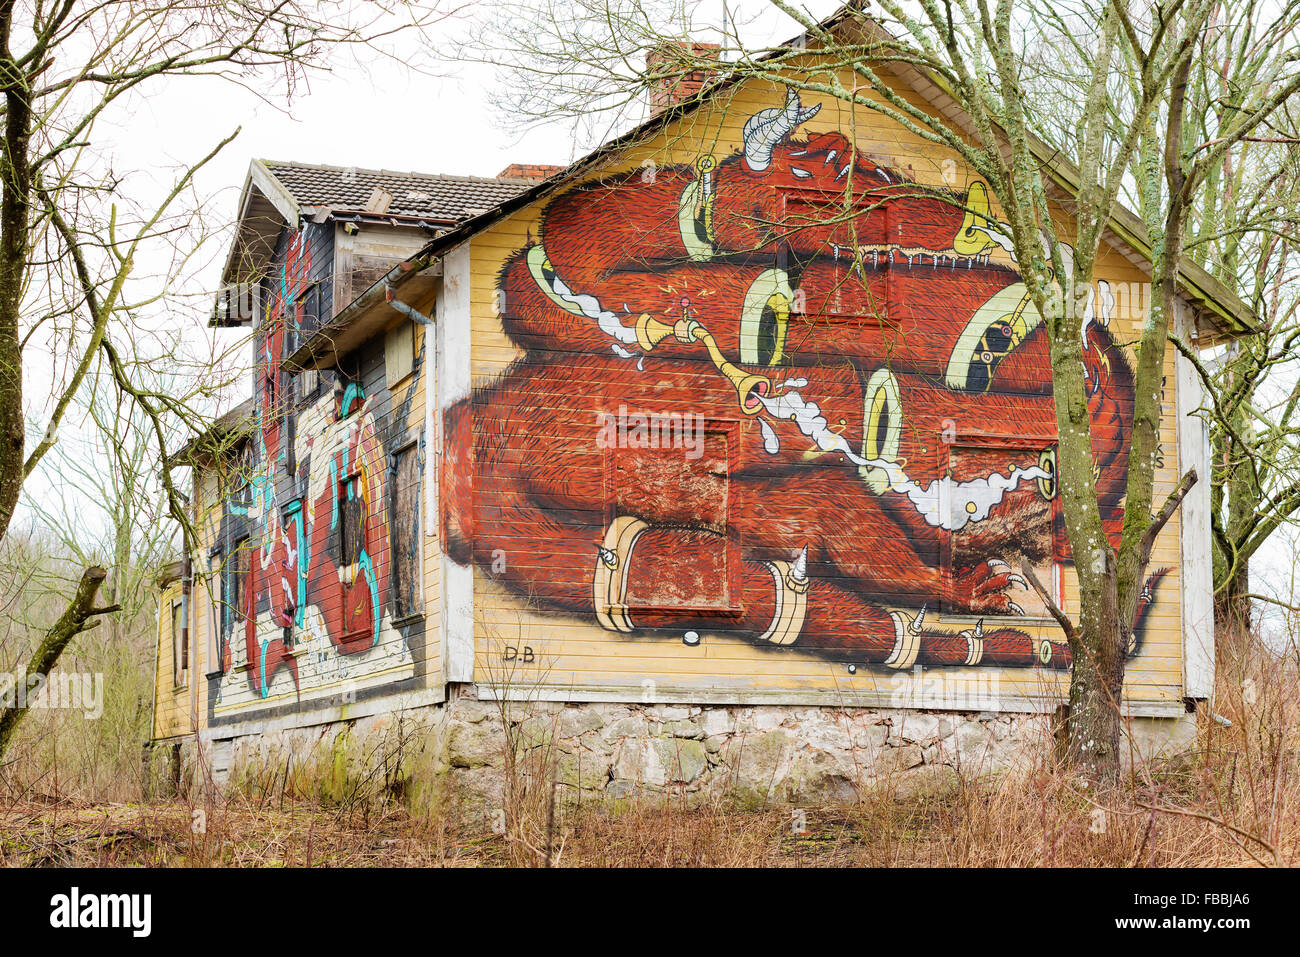 Edestad, Suède - le 12 janvier 2016 : Une vieille maison abandonnée et de monstres et dragons face cochon peint sur elle. Maison est surro Banque D'Images